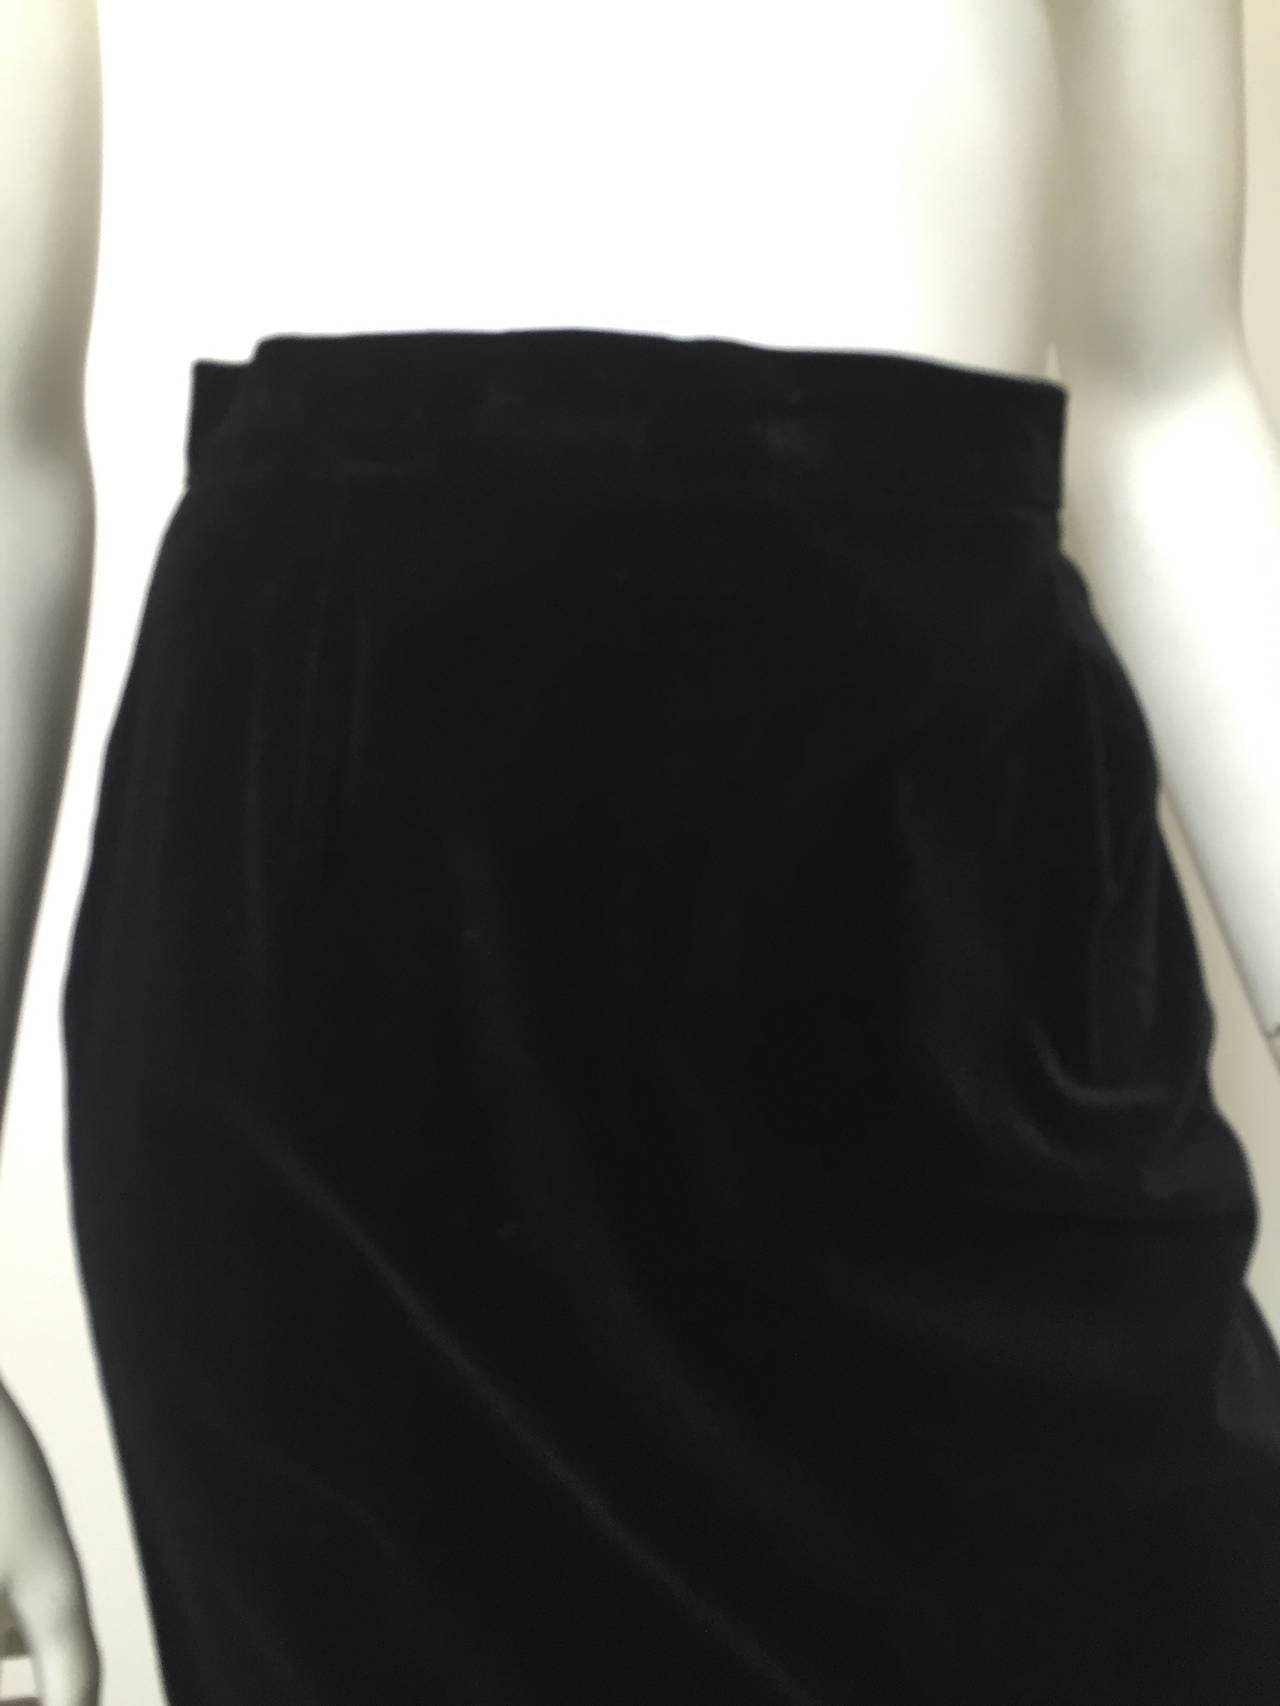 Caroline Charles London for Neiman Marcus 1980s Long Black Velvet Skirt Size 4. 1